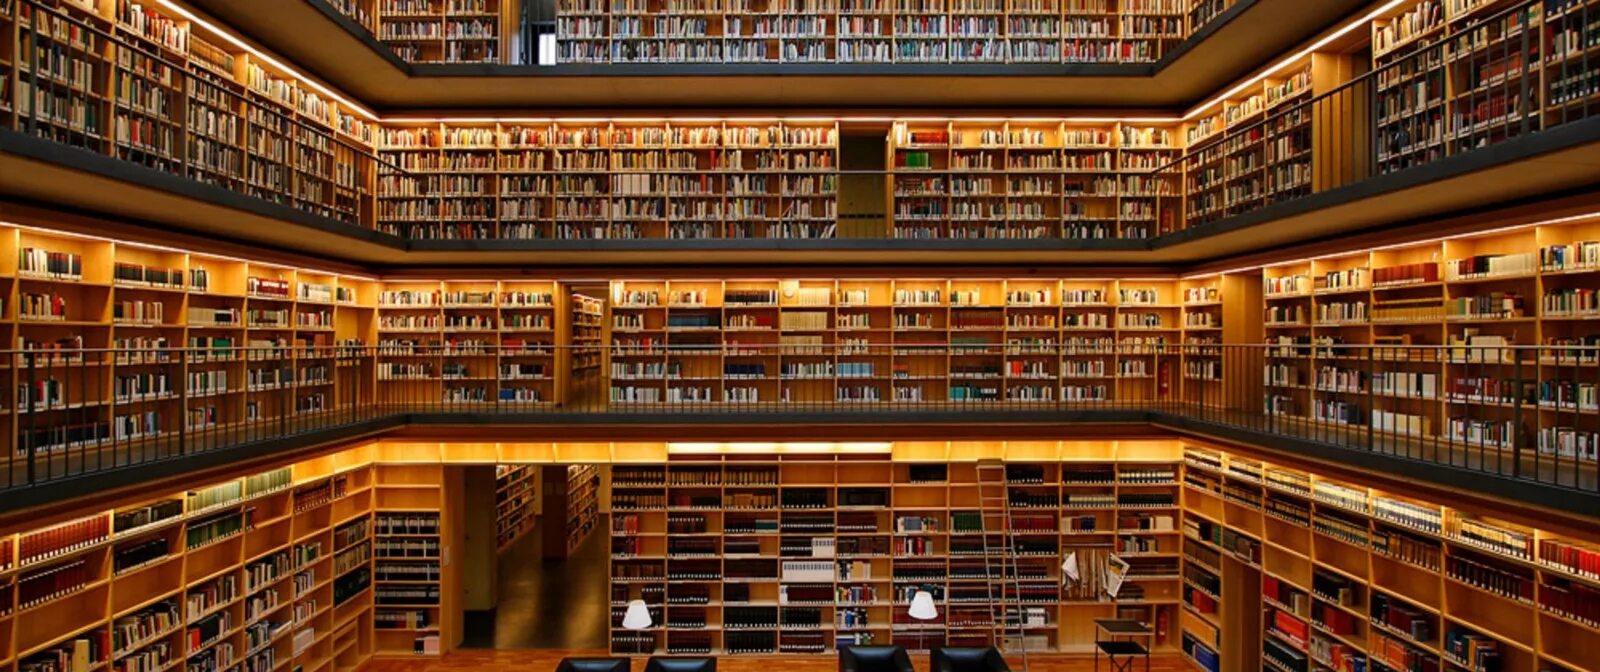 19-Ярусное книгохранилище РГБ. Библиотека Phillips Exeter. Красивая библиотека. Большая библиотека. Doc library